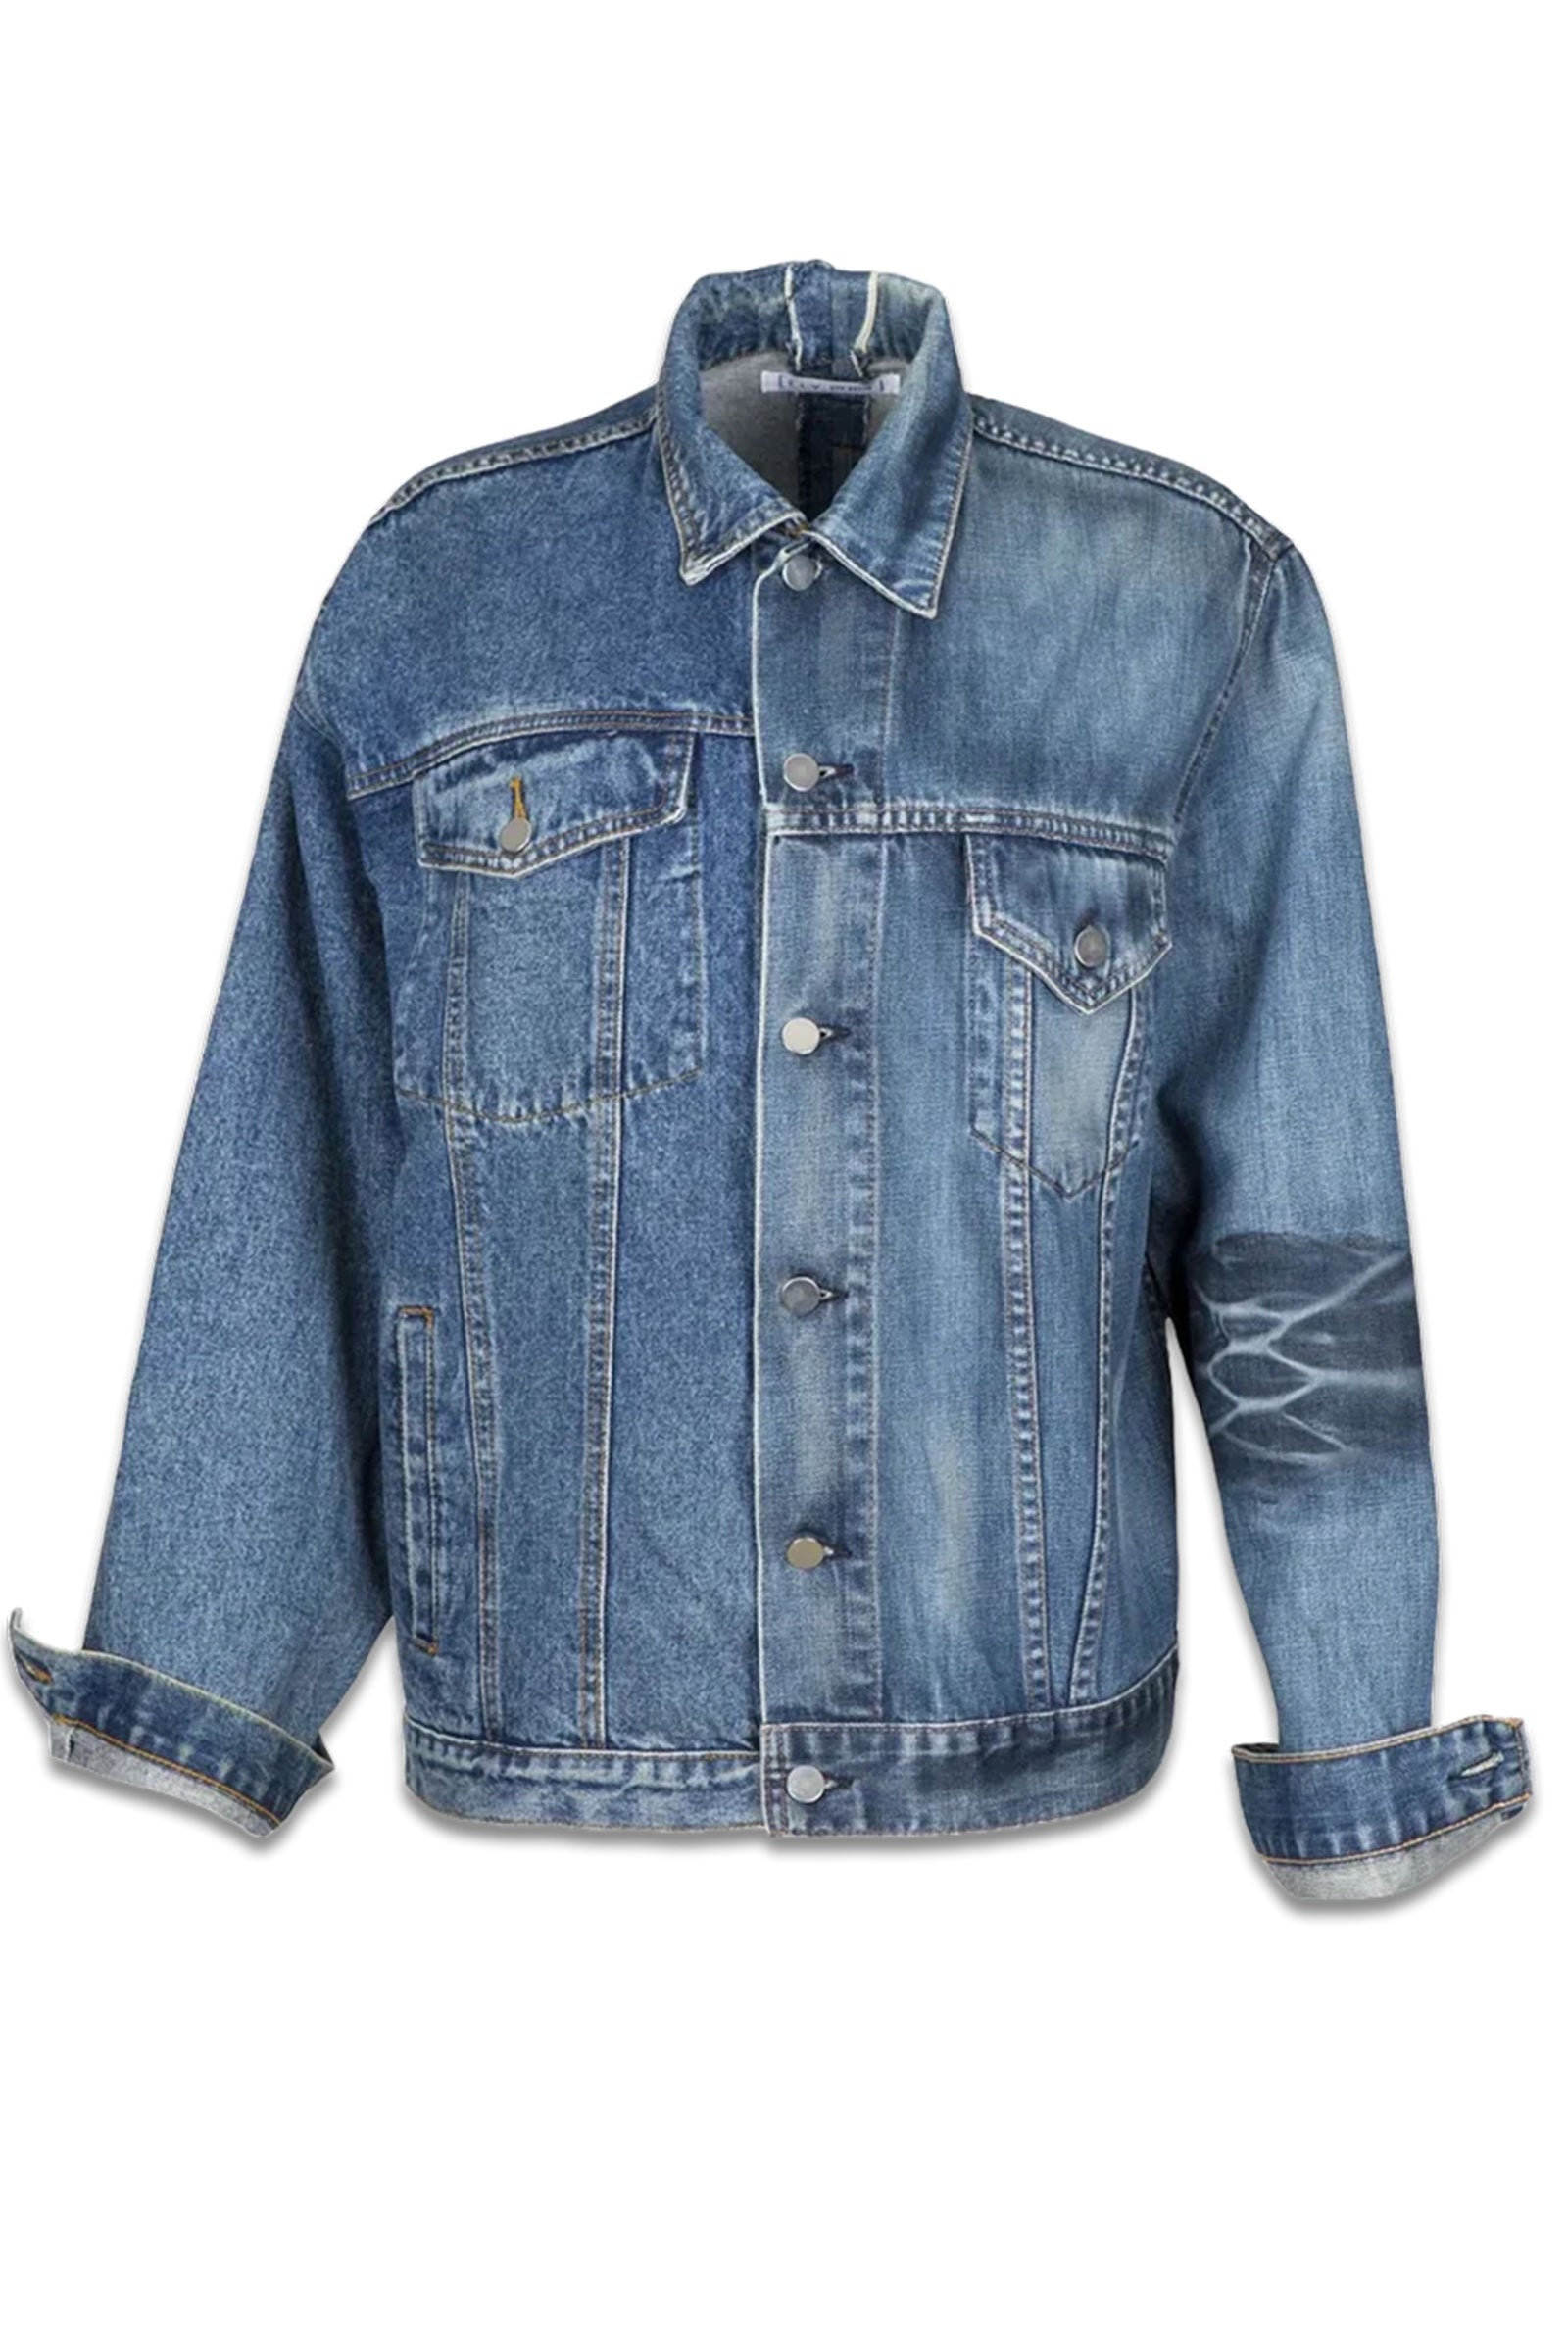 ARKET Denim Jacket, Washed Blue | Wardrobe Icons